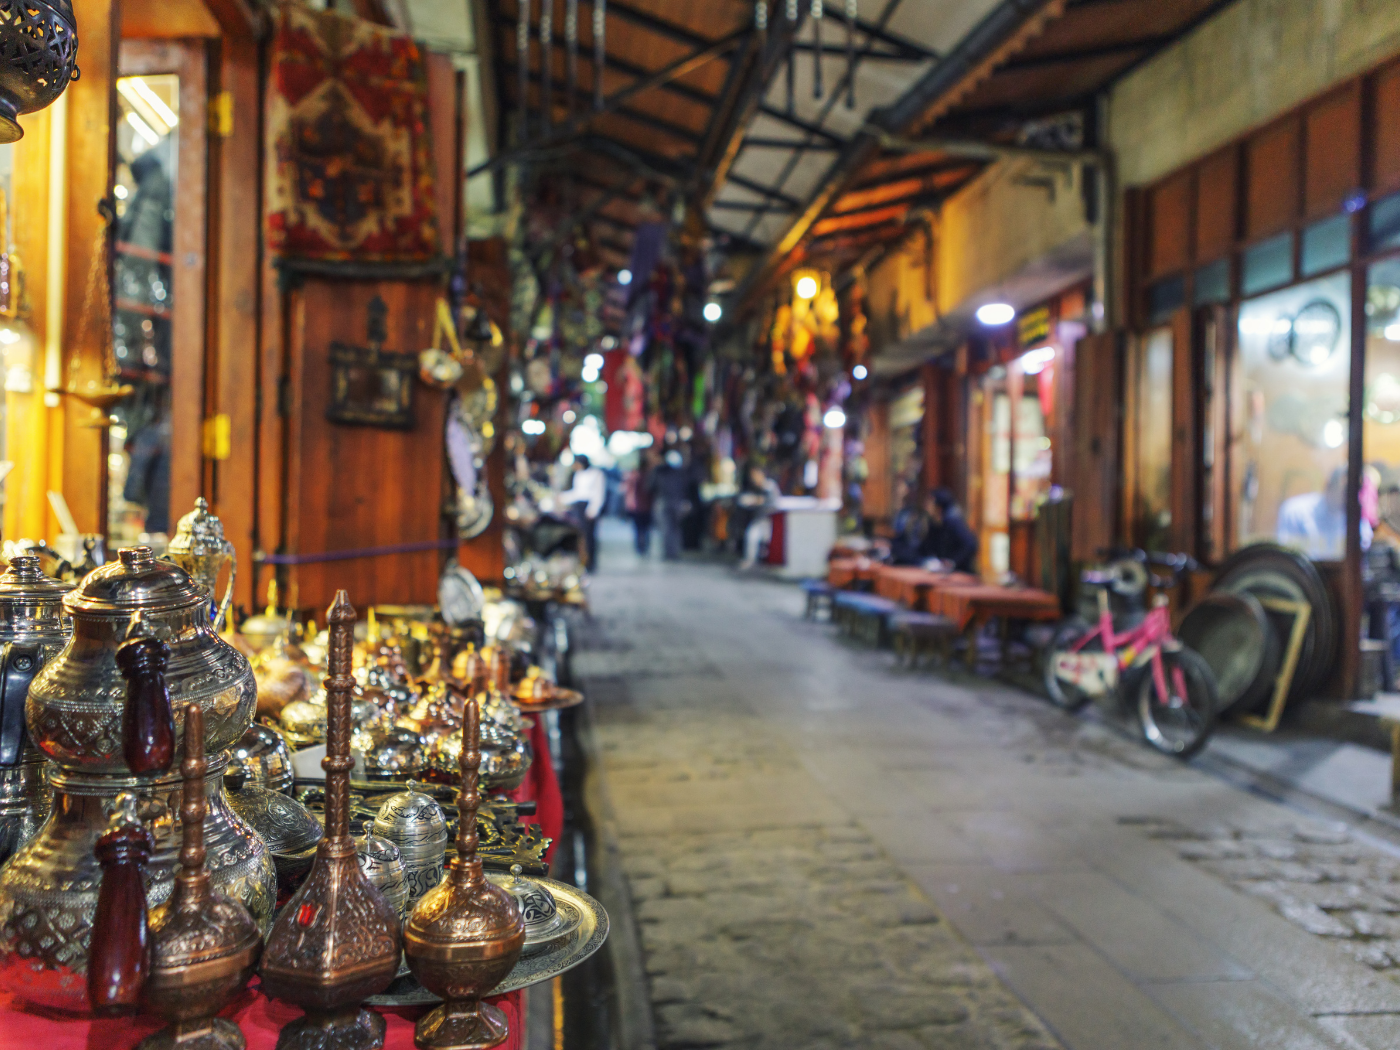 Gaziantep Bakırcılar Çarşısı: Gaziantep'in Tarih Kokan Hazineleri